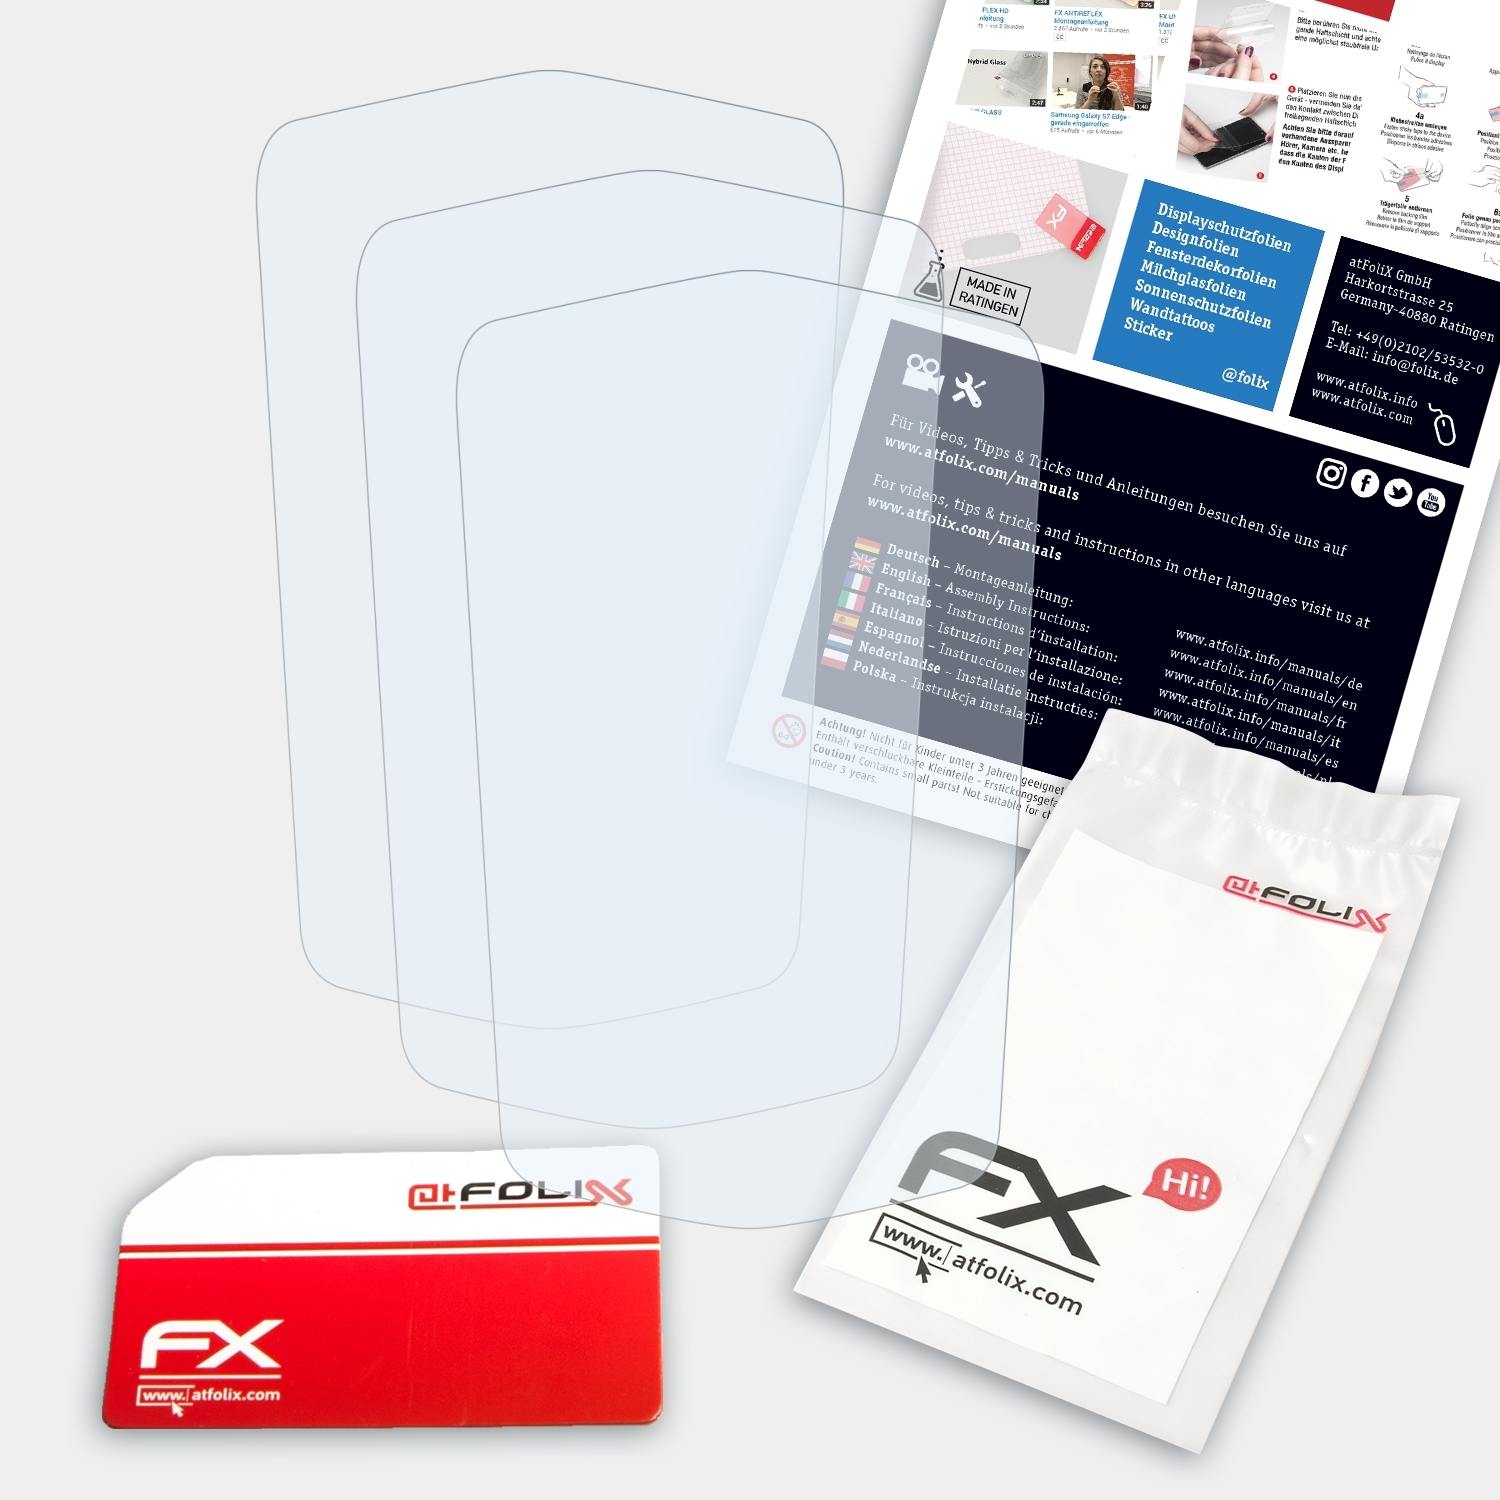 ATFOLIX 3x FX-Clear Displayschutz(für Spektrum X5 Rugged)